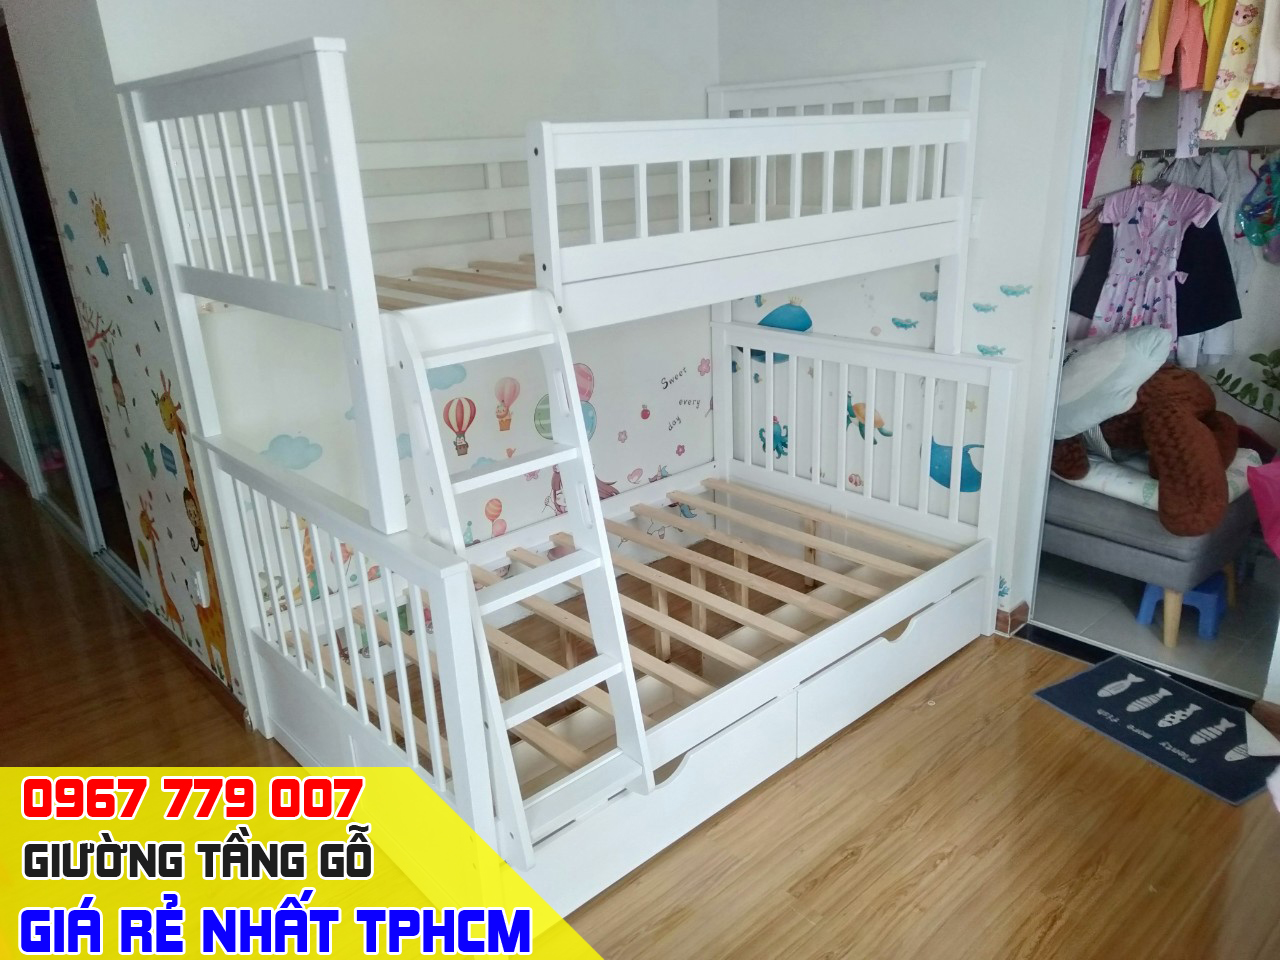 CH bán giường tầng trẻ em giá rẻ uy tín nhất Quận Gò Vấp TPHCM 8